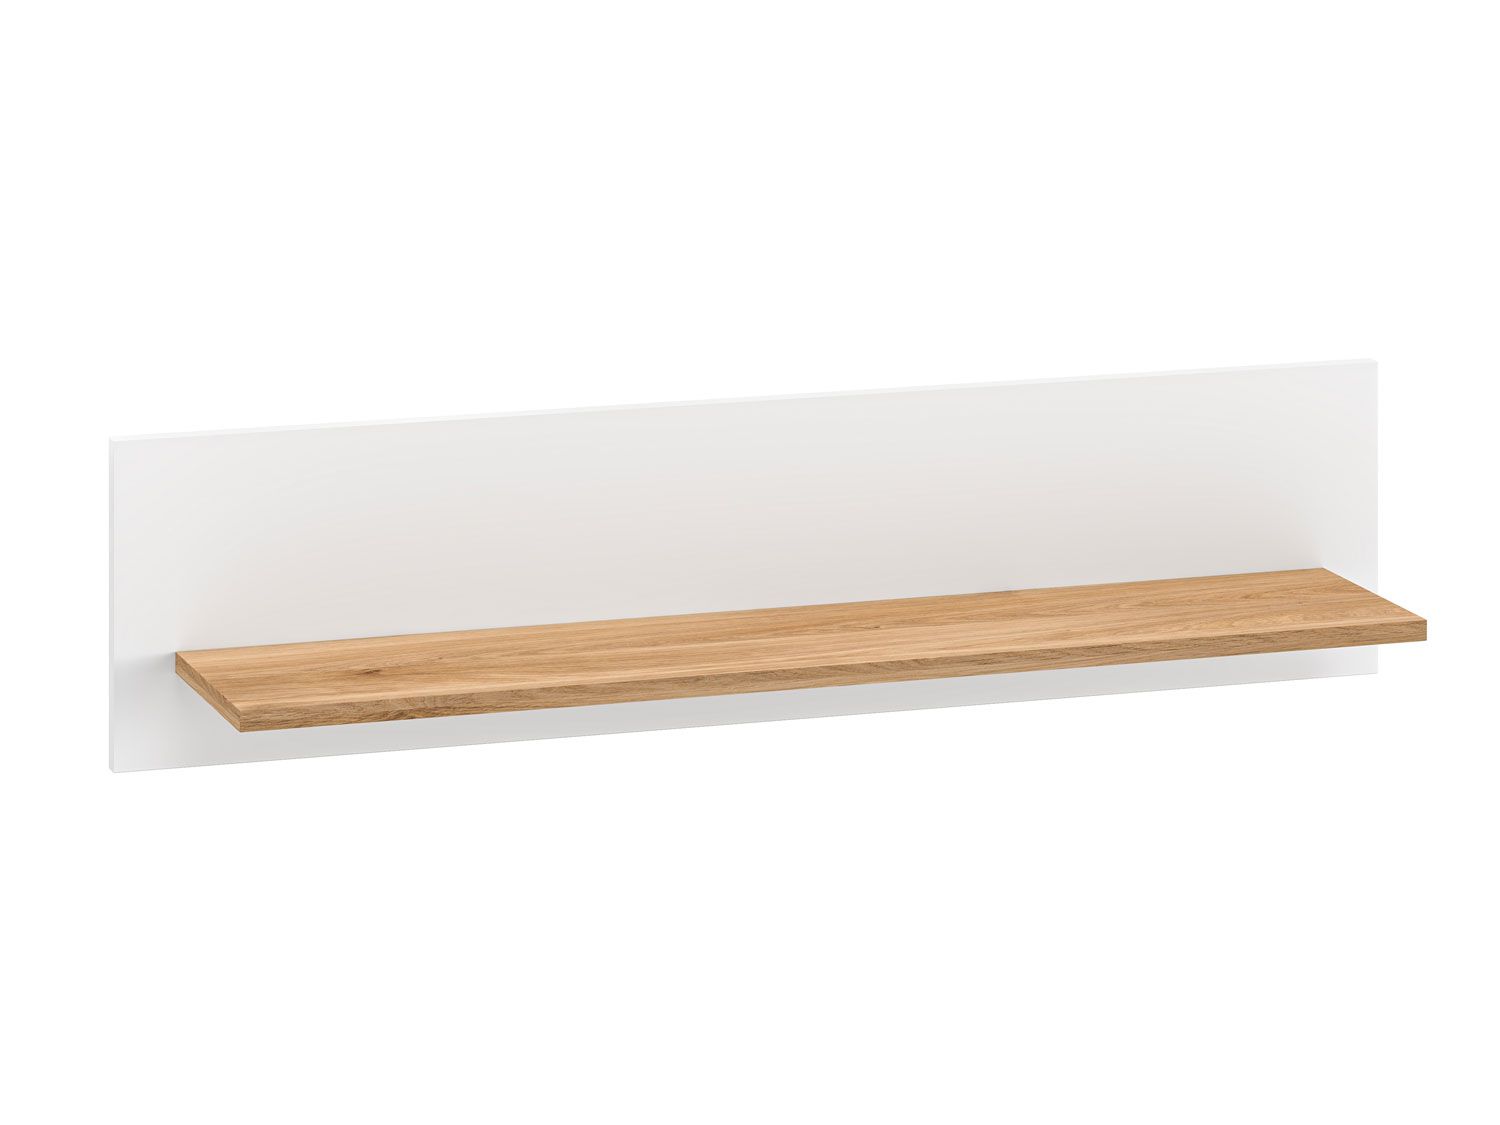 Hängeregal / Wandregal mit einer Ablage Mackinac 10, Farbe: Weiß / Eiche, Maße: 25 x 101 x 21 cm, leicht kombinierbar mit anderen Möbeln